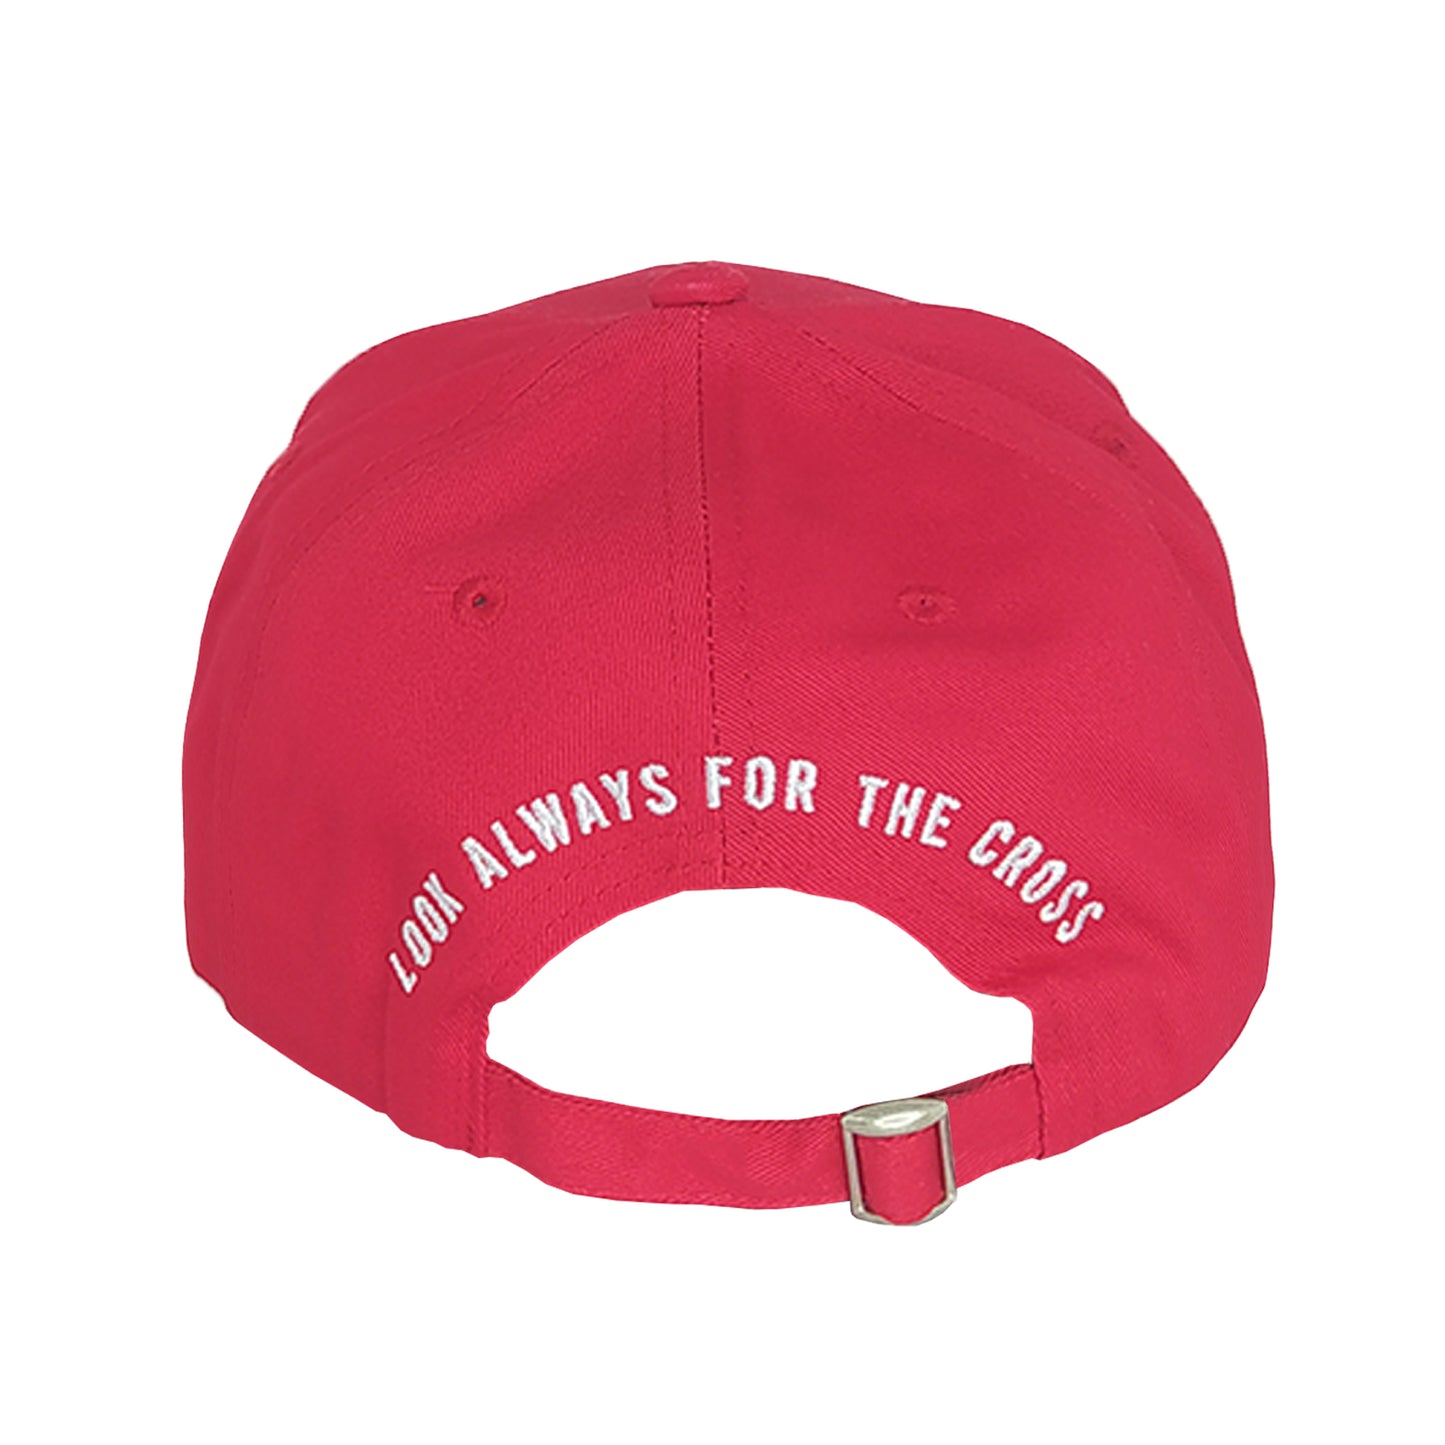 Καπέλο Jockey Zu Elements Κόκκινο ZU0069 RED